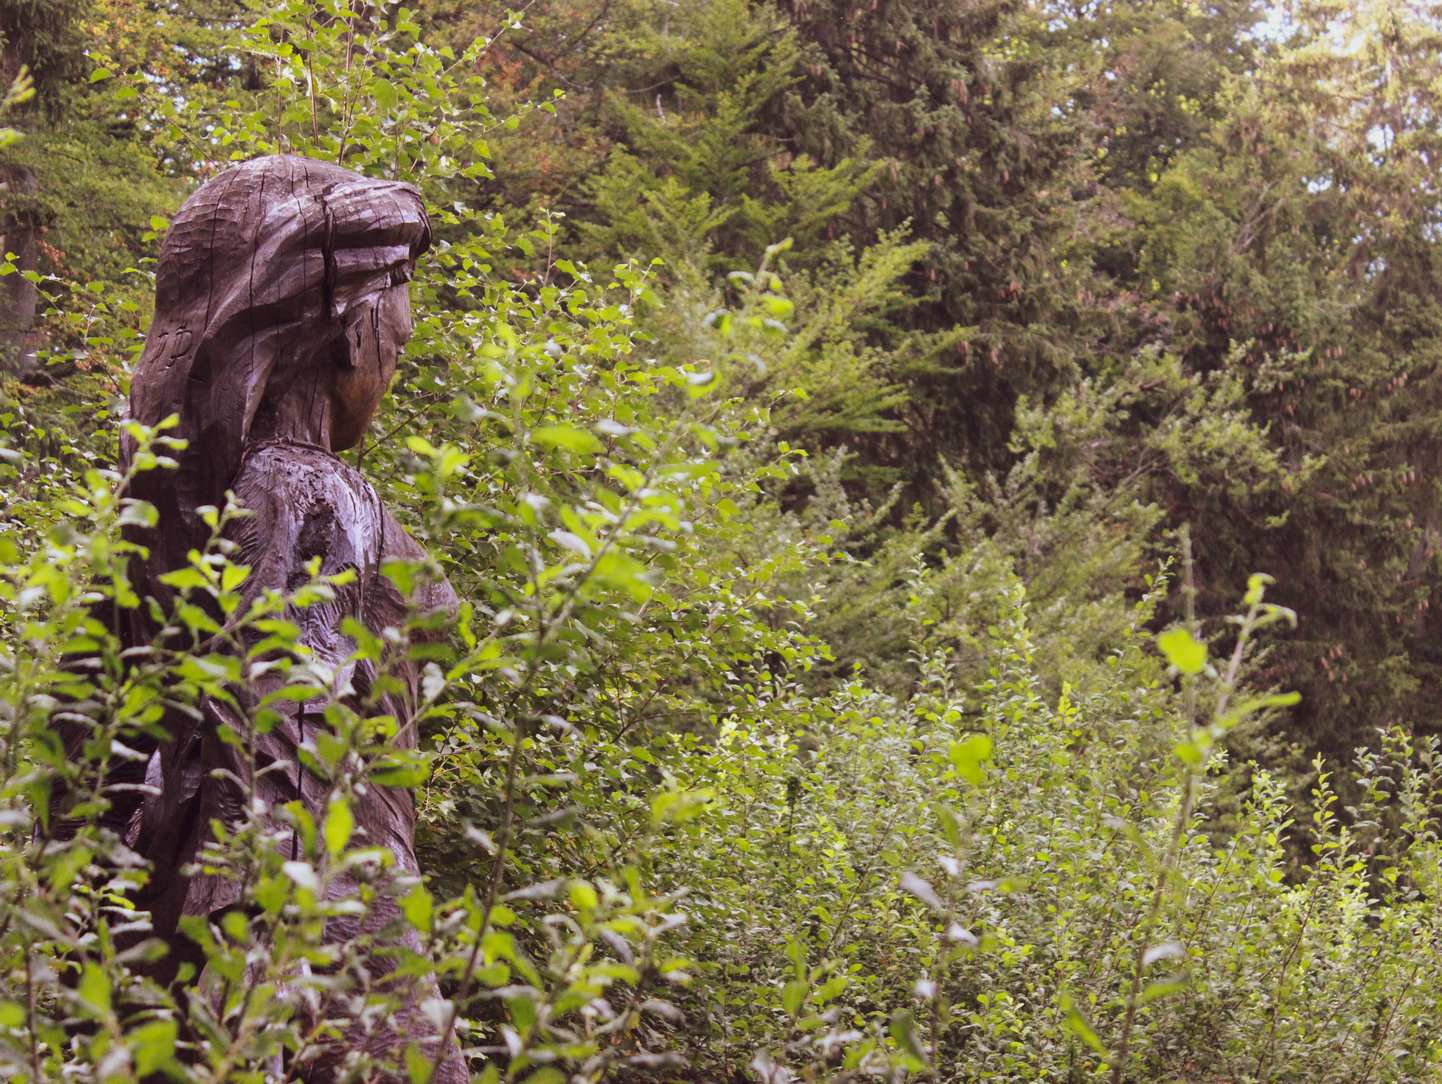 Frau Holle Figur aus Holz umgeben von hochgewachsenen Gräsern, Kräutern und Bäumen am Frau-Holle-Teich. Die Figur schaut zur Seite in Richtung Teich.